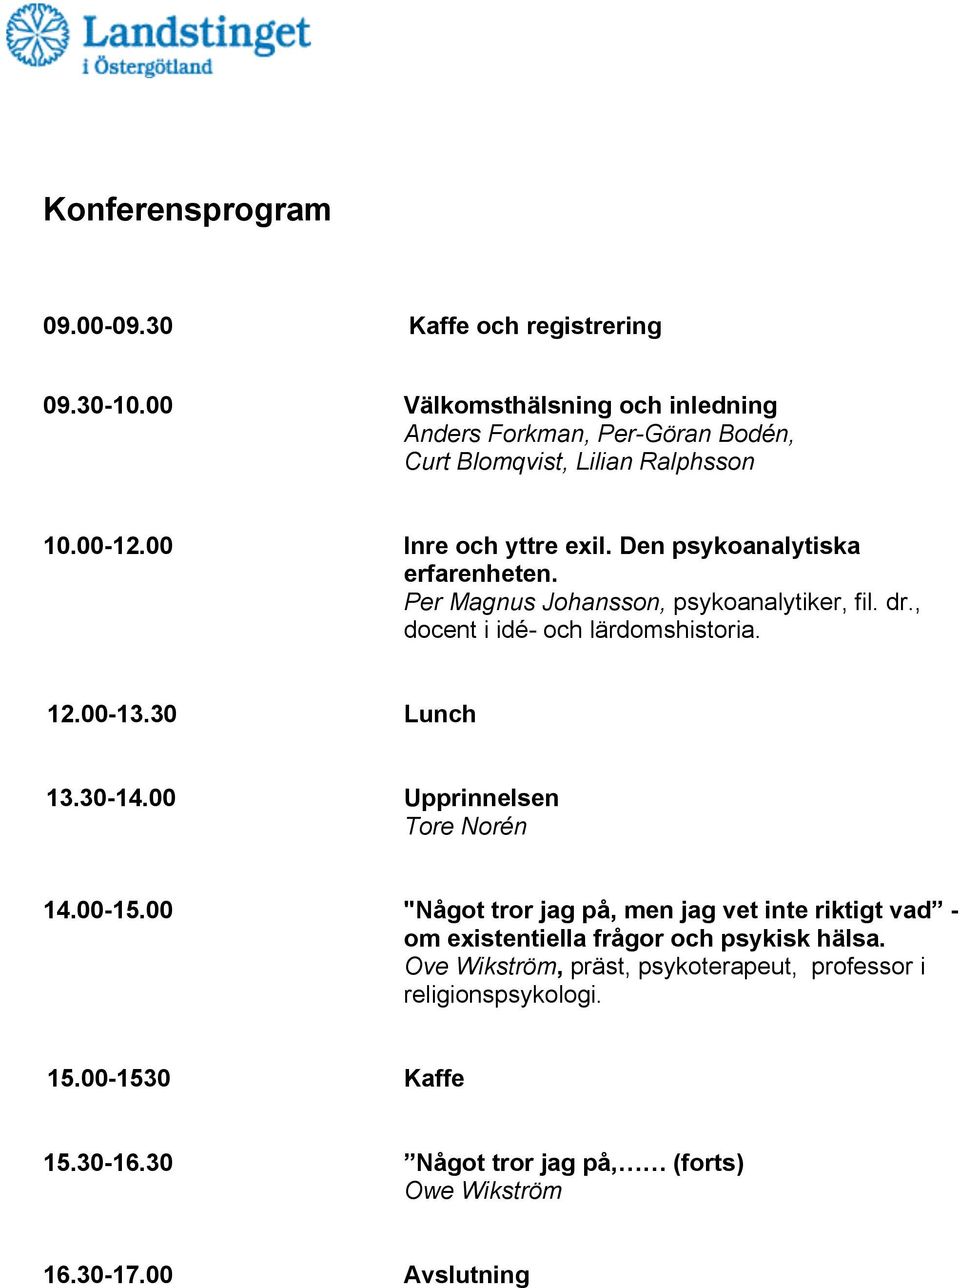 Den psykoanalytiska erfarenheten. Per Magnus Johansson, psykoanalytiker, fil. dr., docent i idé- och lärdomshistoria. 12.00-13.30 Lunch 13.30-14.